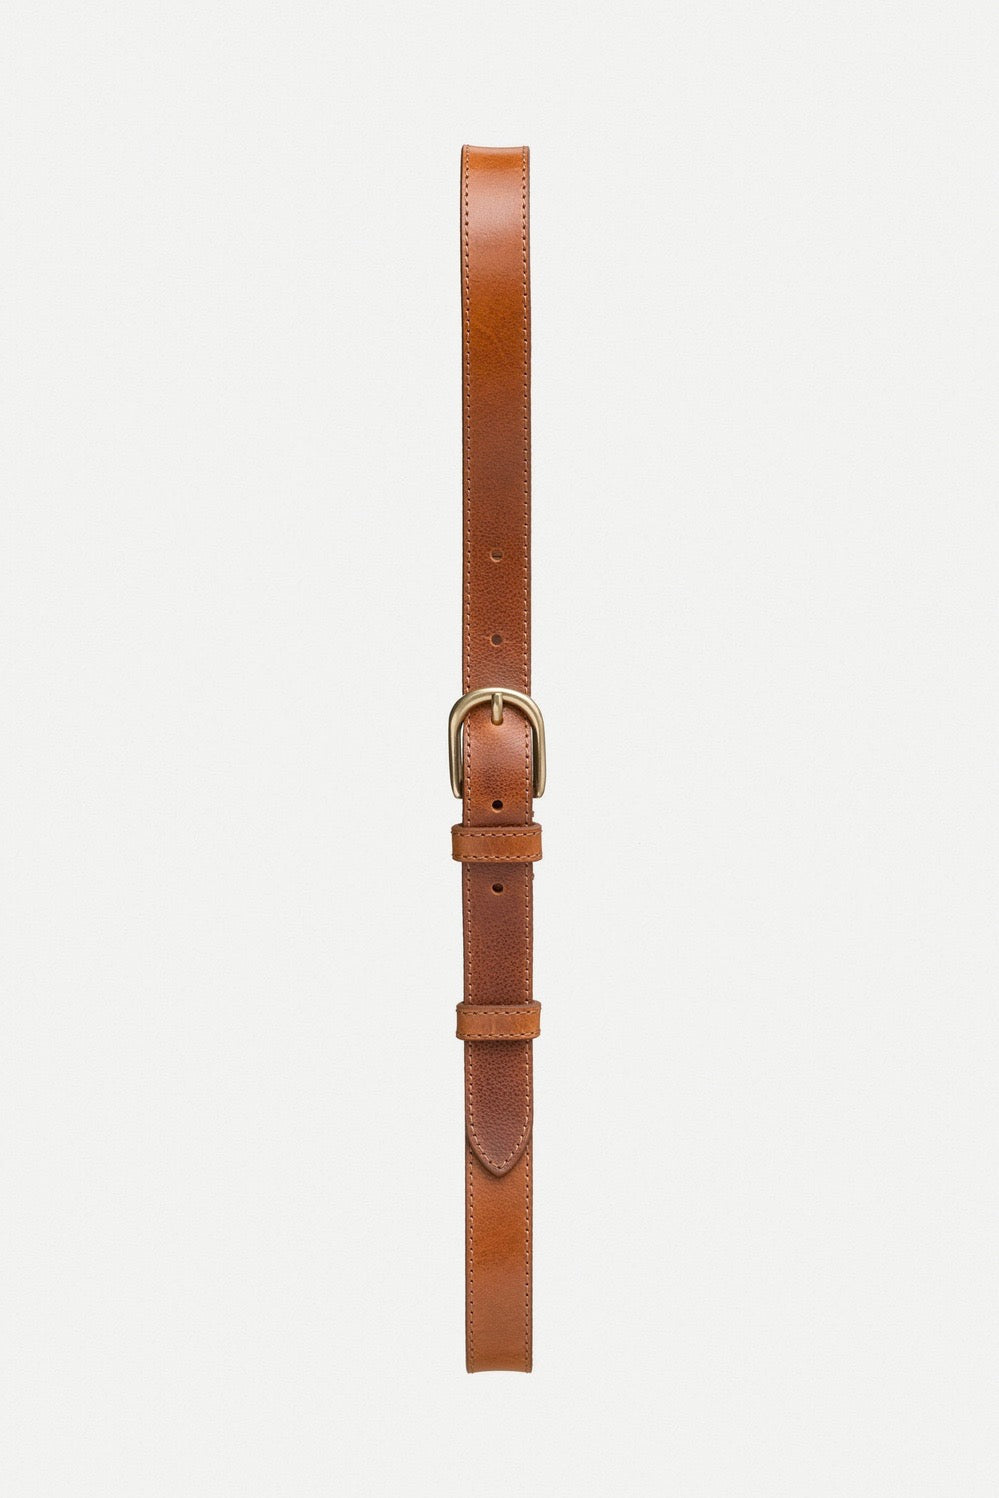 Brauner Ledergürtel mit pflanzlicher Färbung bzw Gerbung von Nudie Jeans. Handsome Belt toffee brown